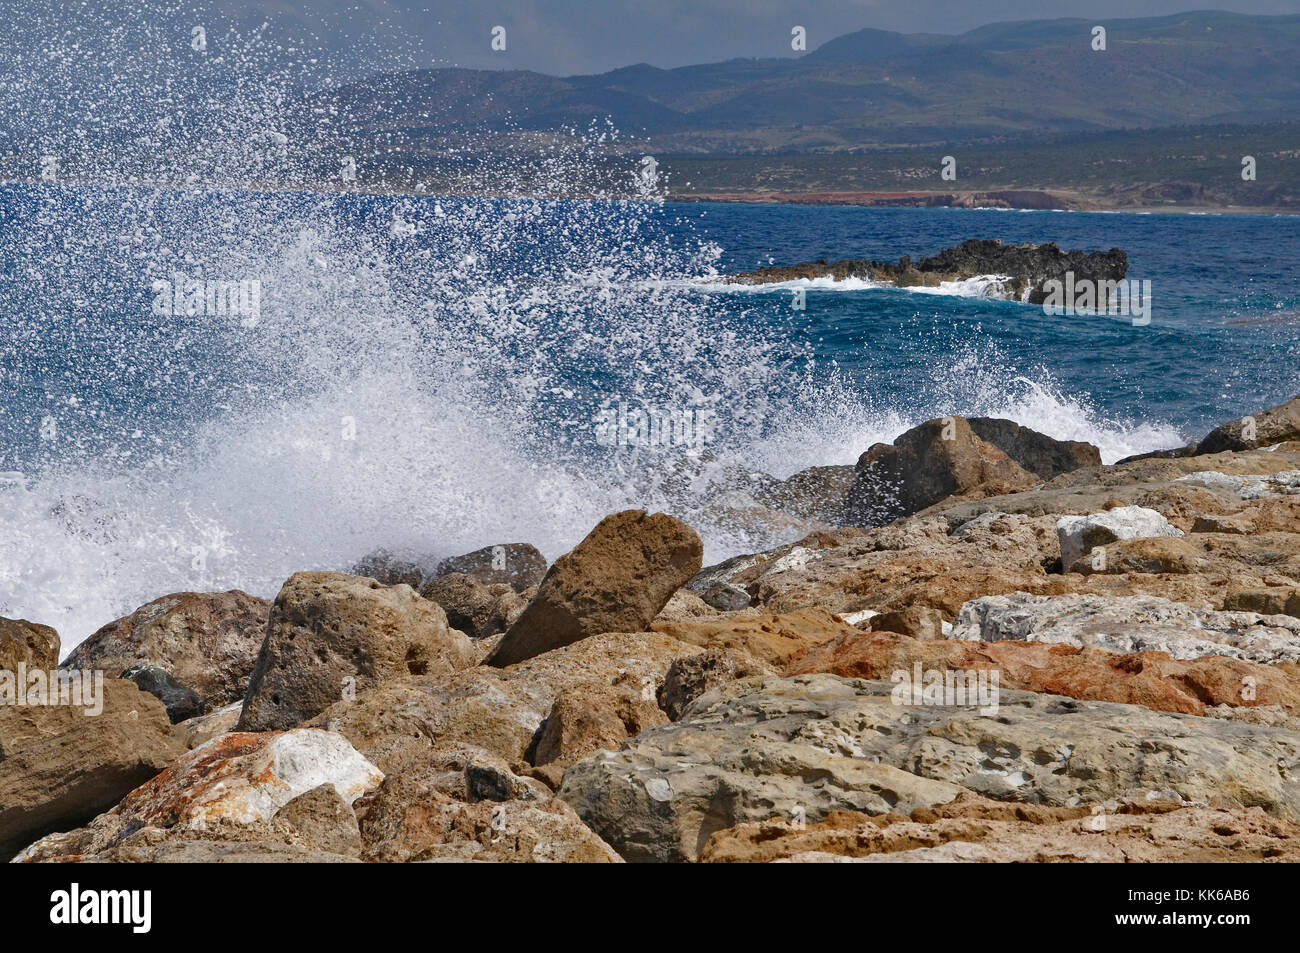 La côte rocheuse sauvage de la zone de conservation d'Akamas à Paphos Chypre avec des vagues Banque D'Images